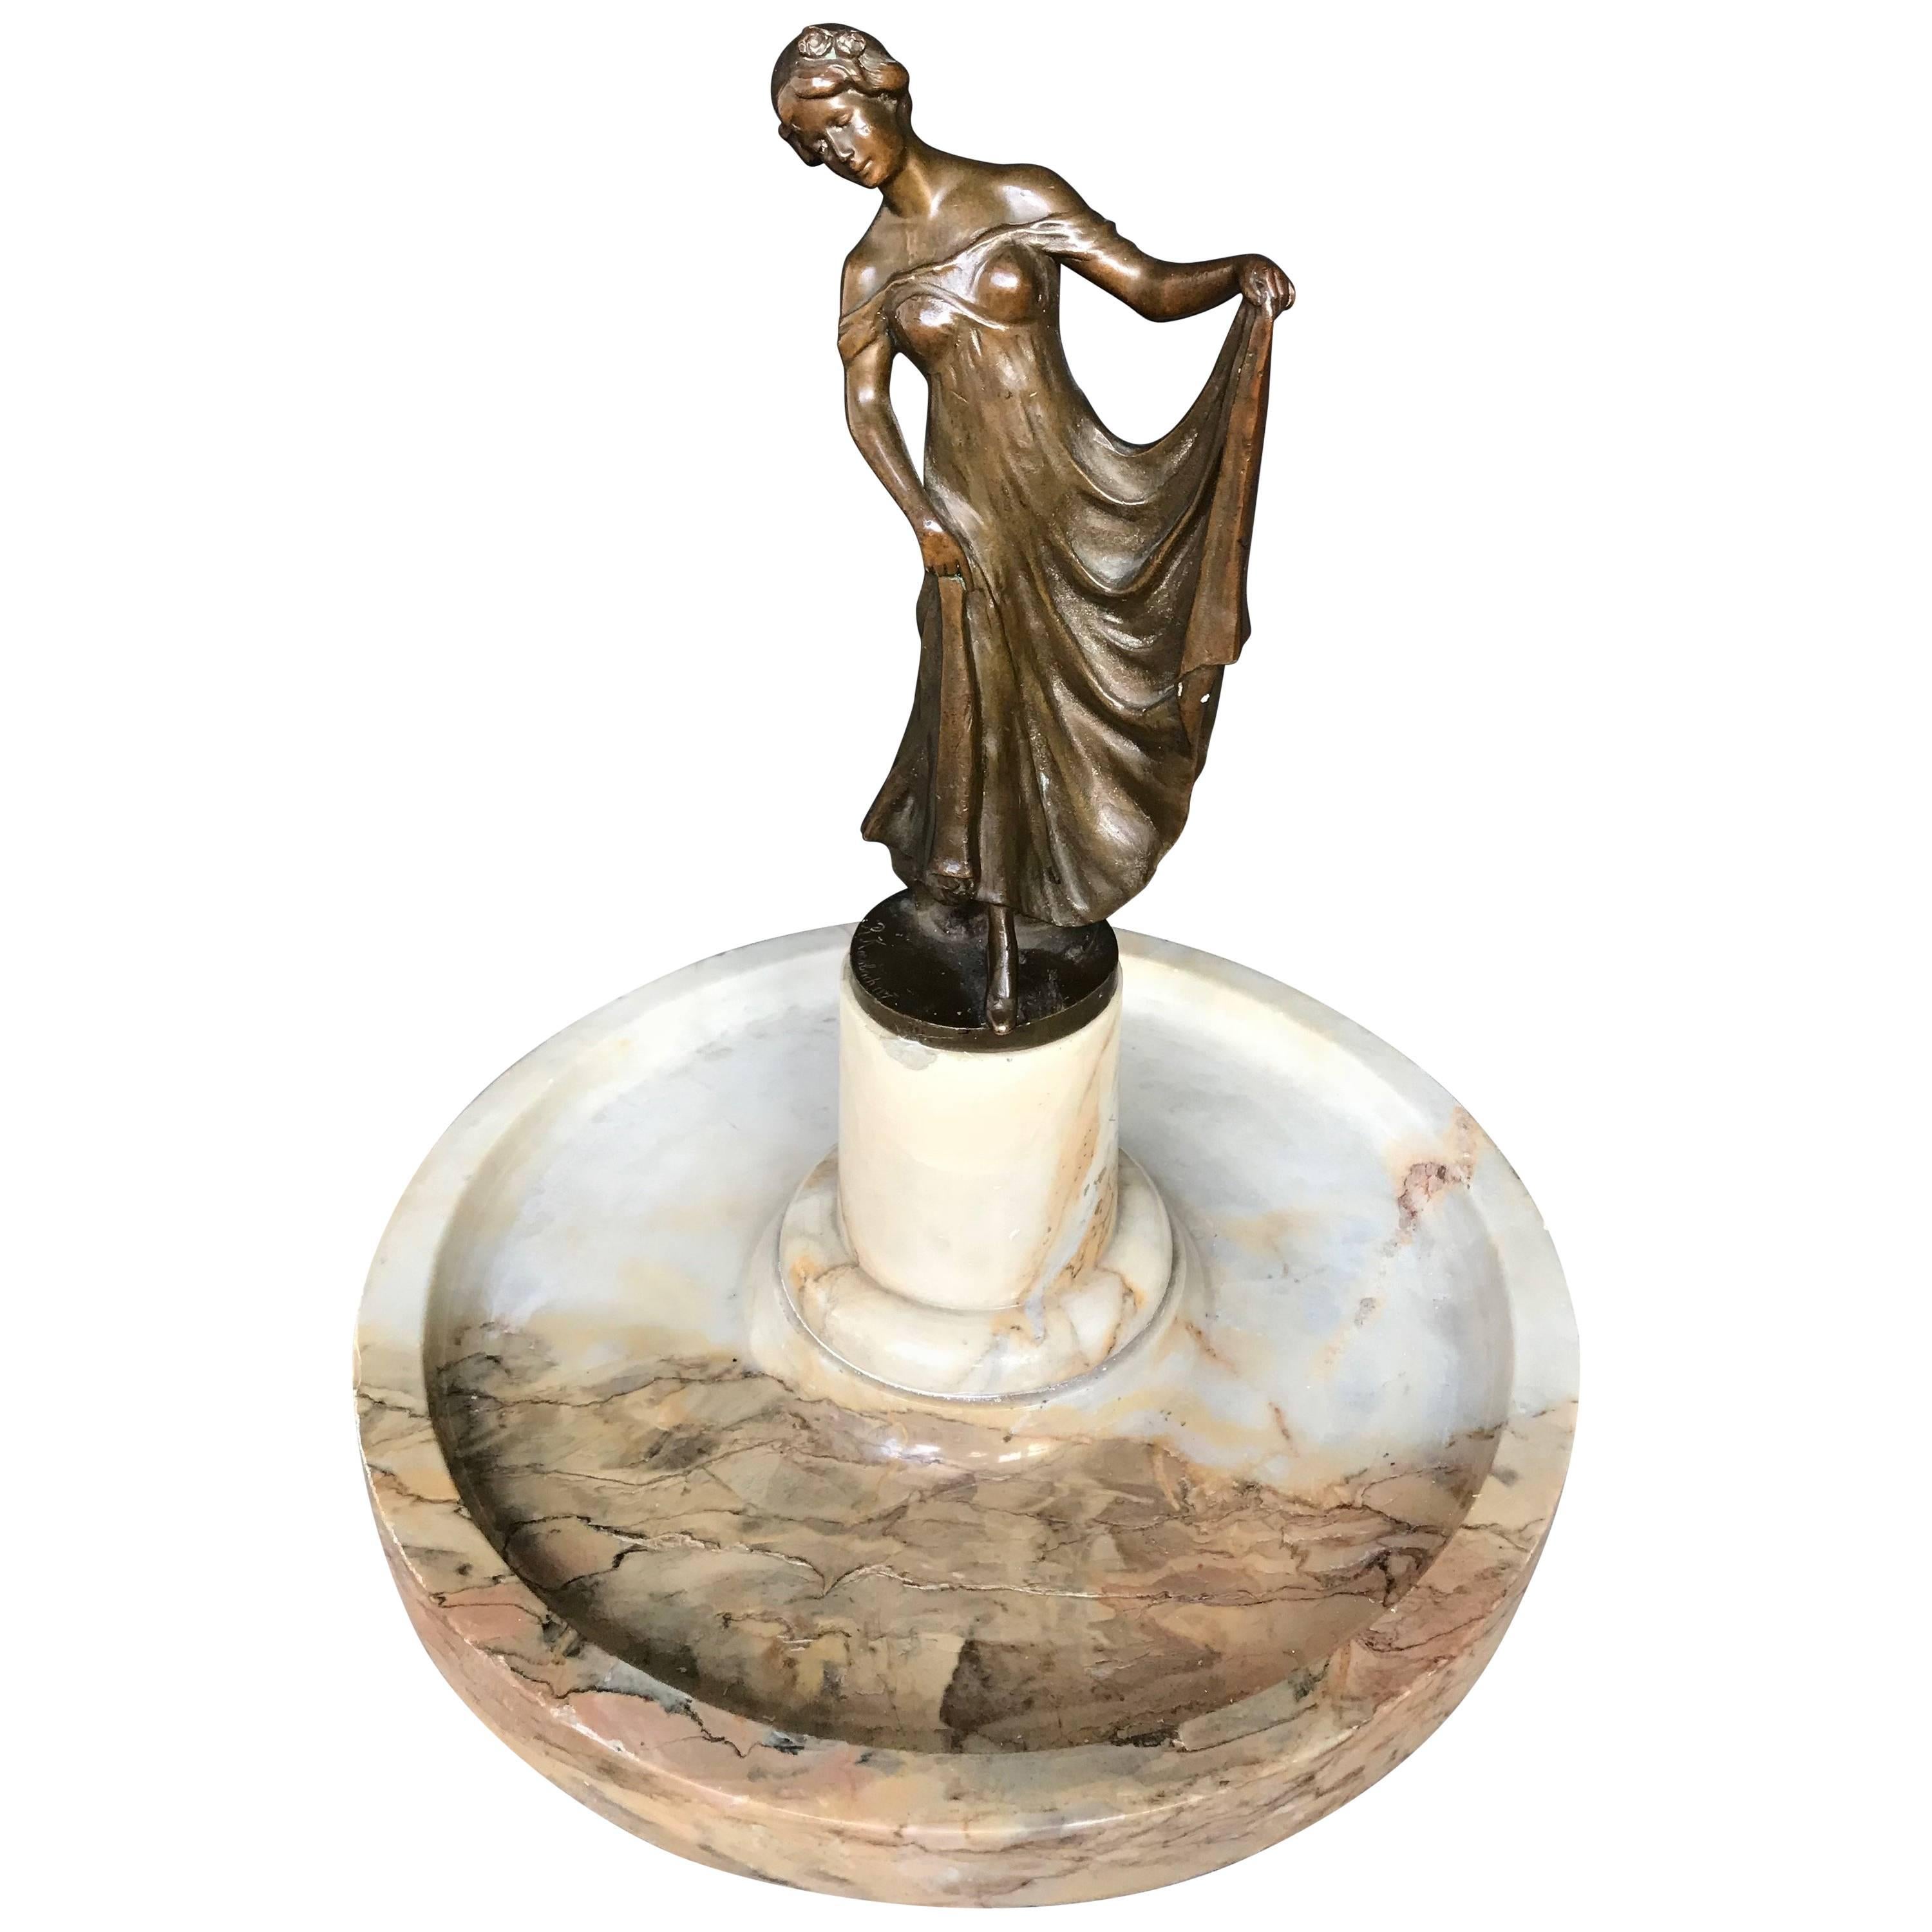 Début du 20e siècle, Elegance Sculpture de dame en bronze Jugendstil sur base de plateau en marbre